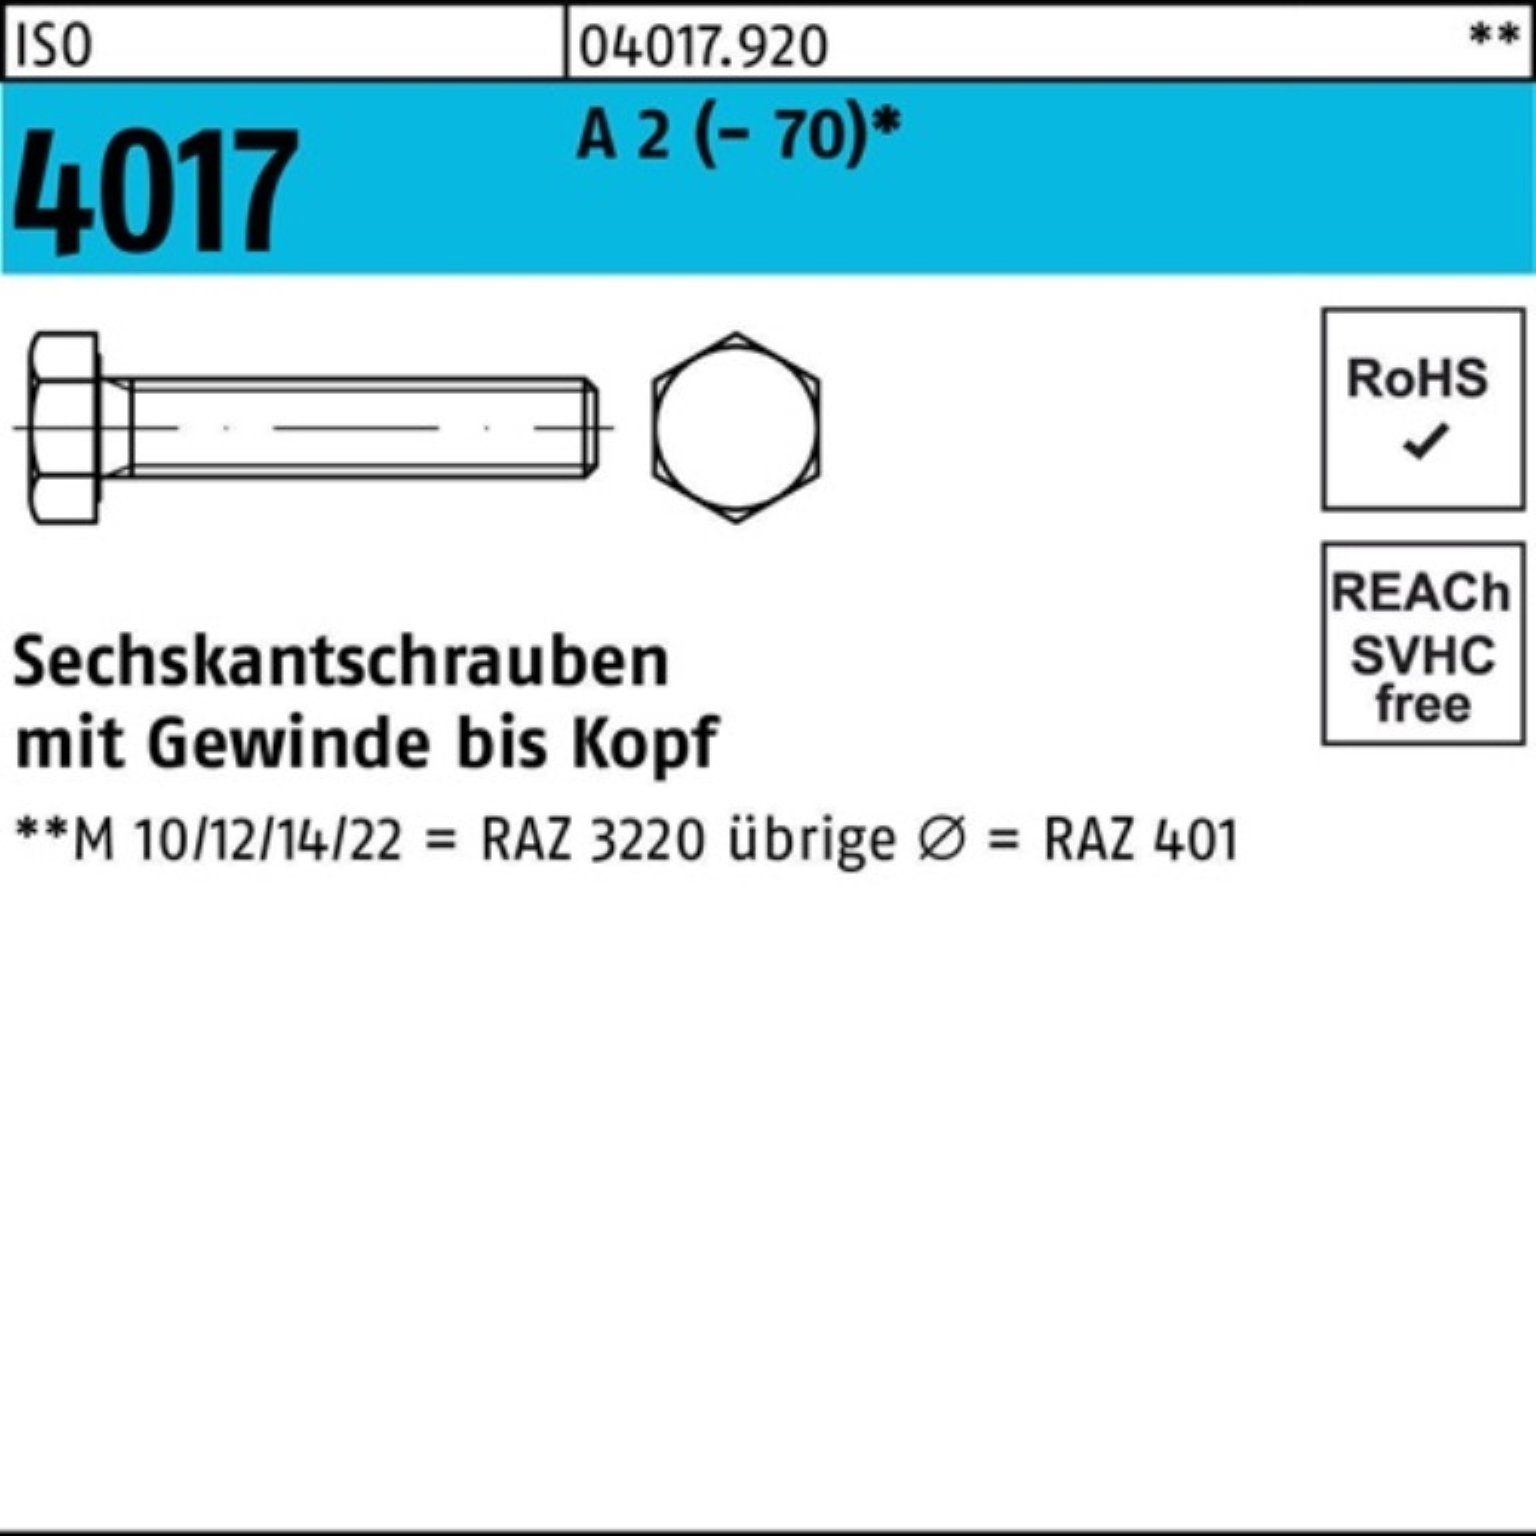 Bufab Sechskantschraube 100er Pack Sechskantschraube ISO 4017 VG M22x 70 A 2 (70) 10 Stück